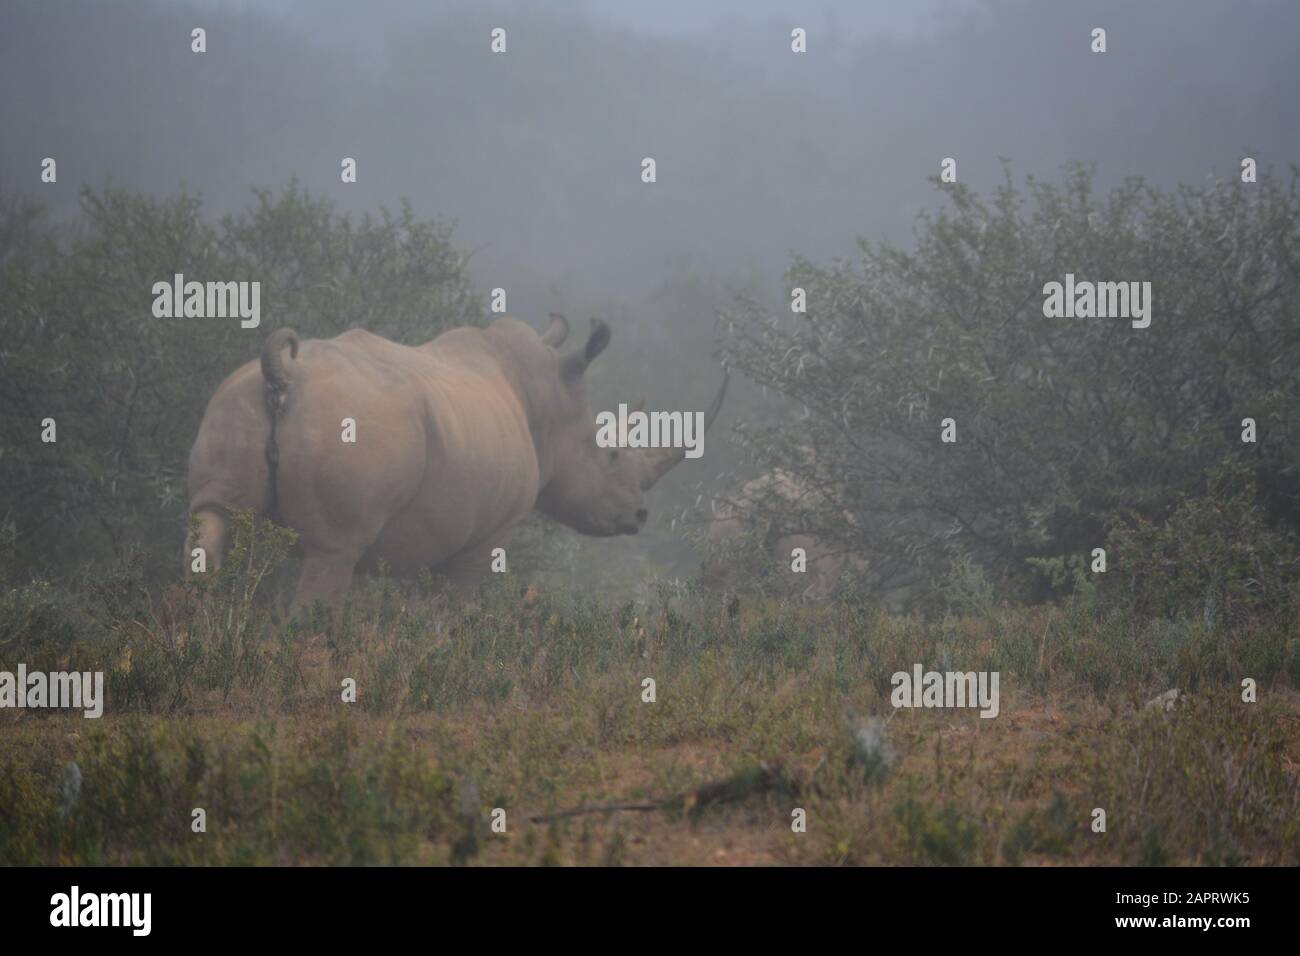 Un rinoceronte y su ternero corren detrás de algunos árboles en una mañana brumosa. Foto de stock